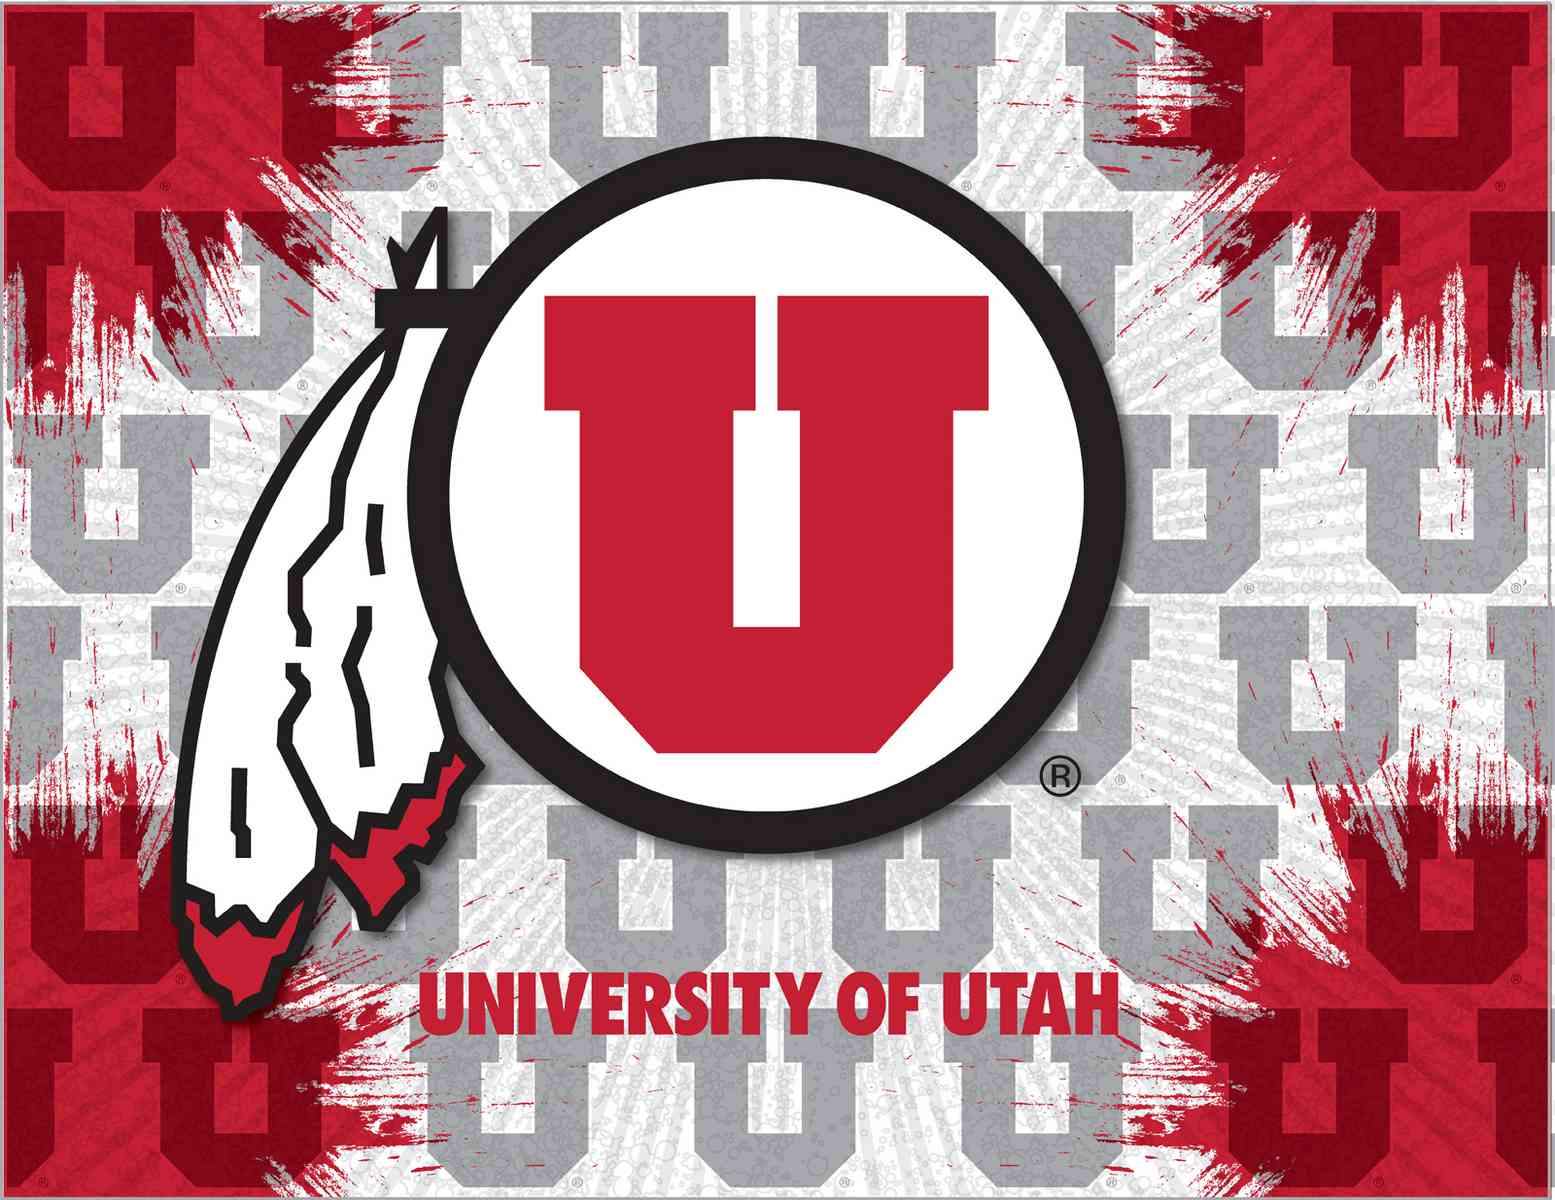 The Utes Logo - University of Utah Canvas - Utes Logo